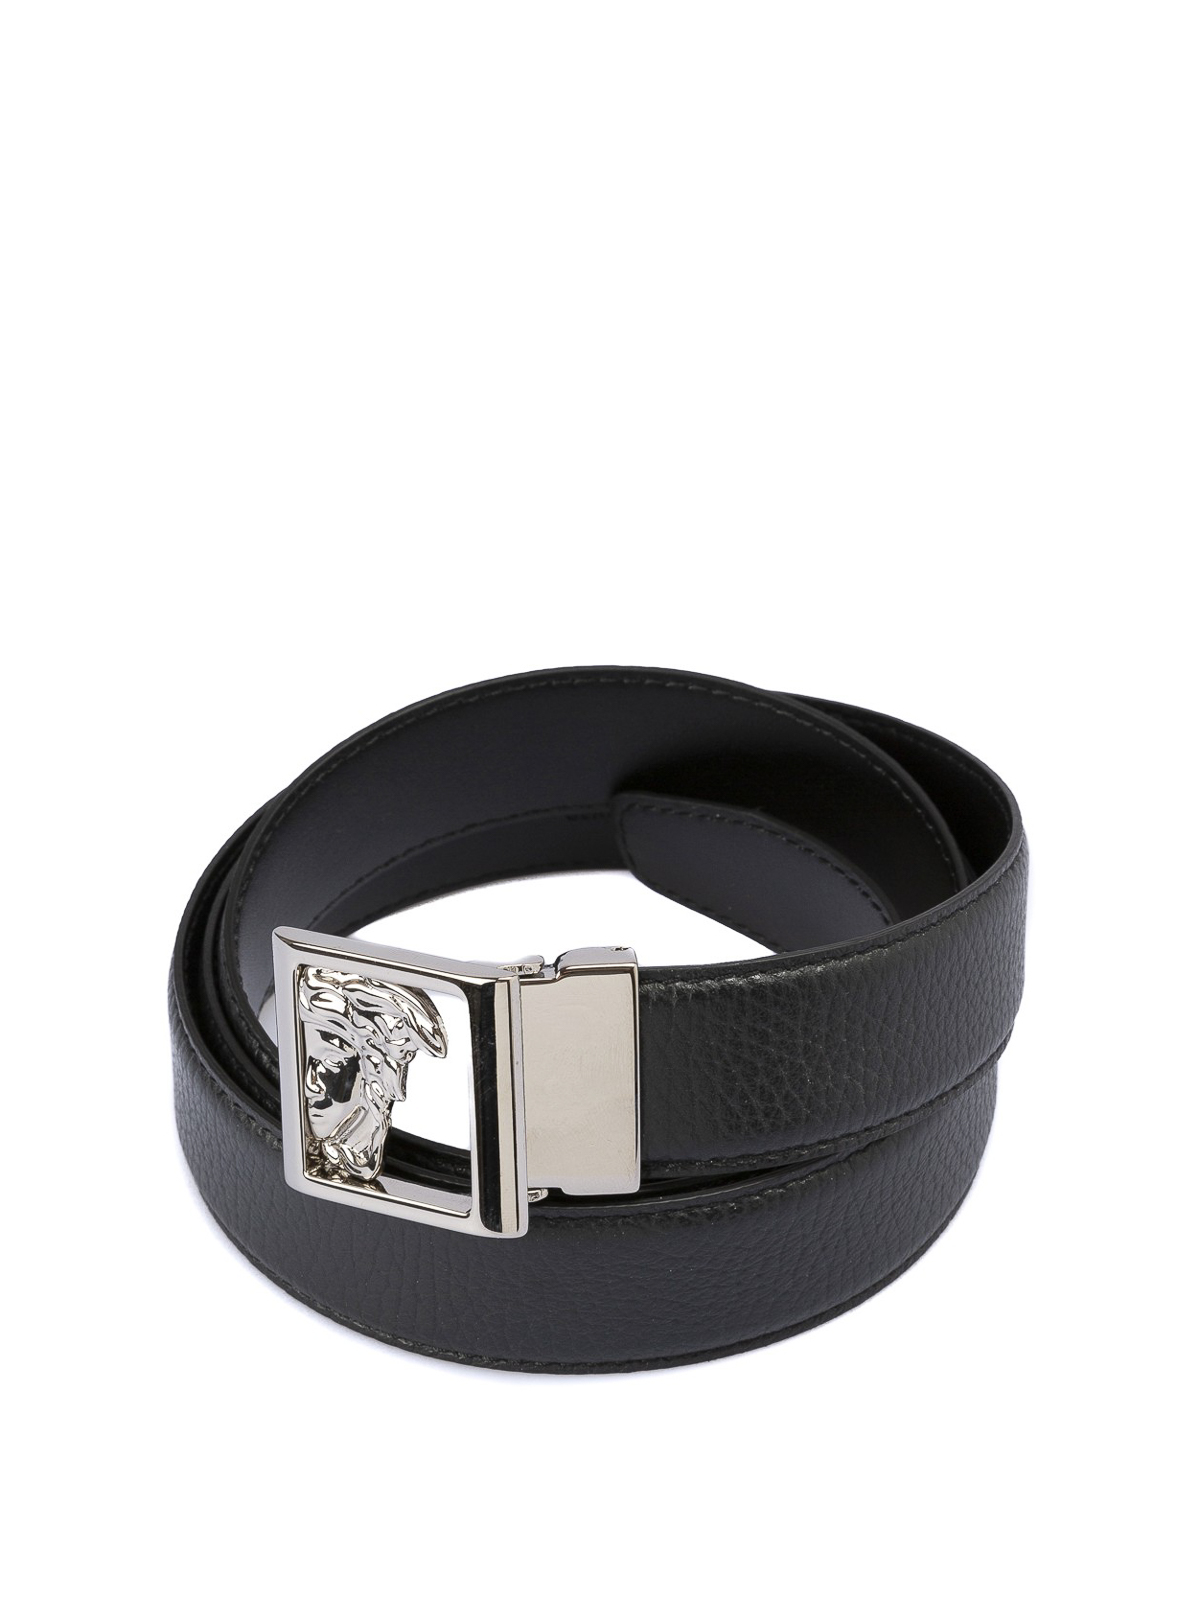 Belts Versace Collection - Medusa Head black hammered leather belt -  V910229VM00430V000